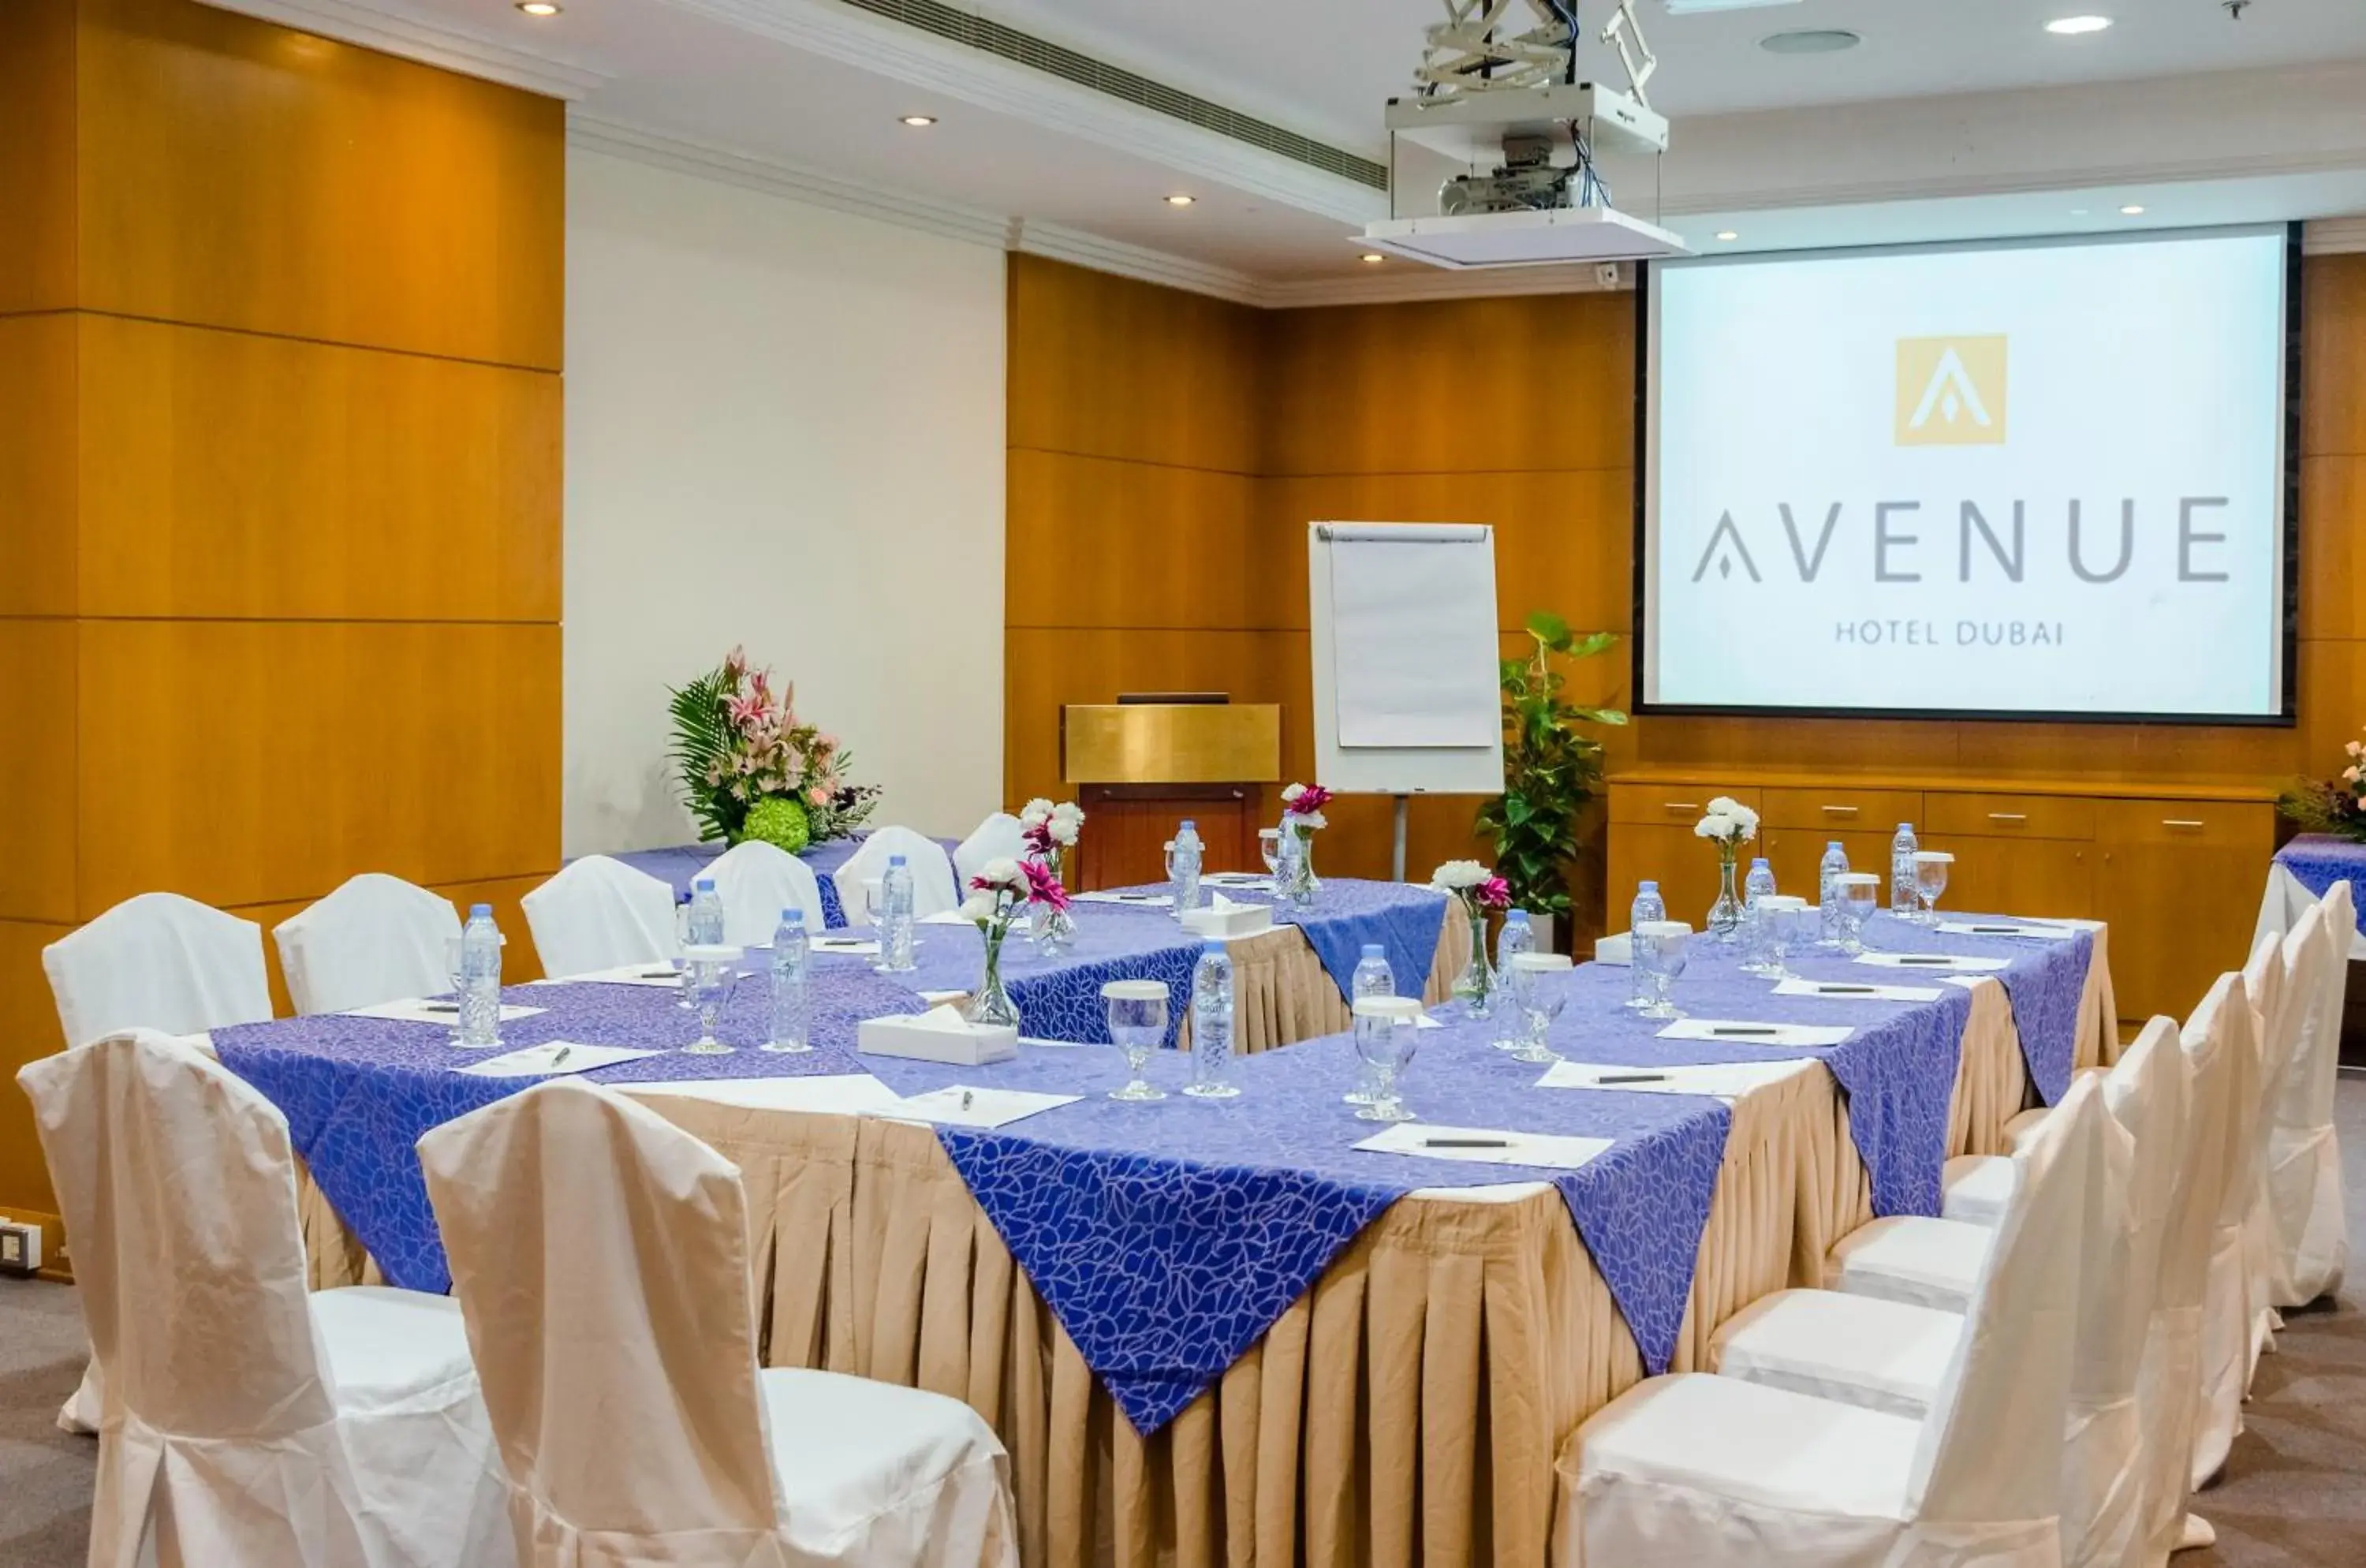 Banquet/Function facilities in Avenue Hotel Dubai